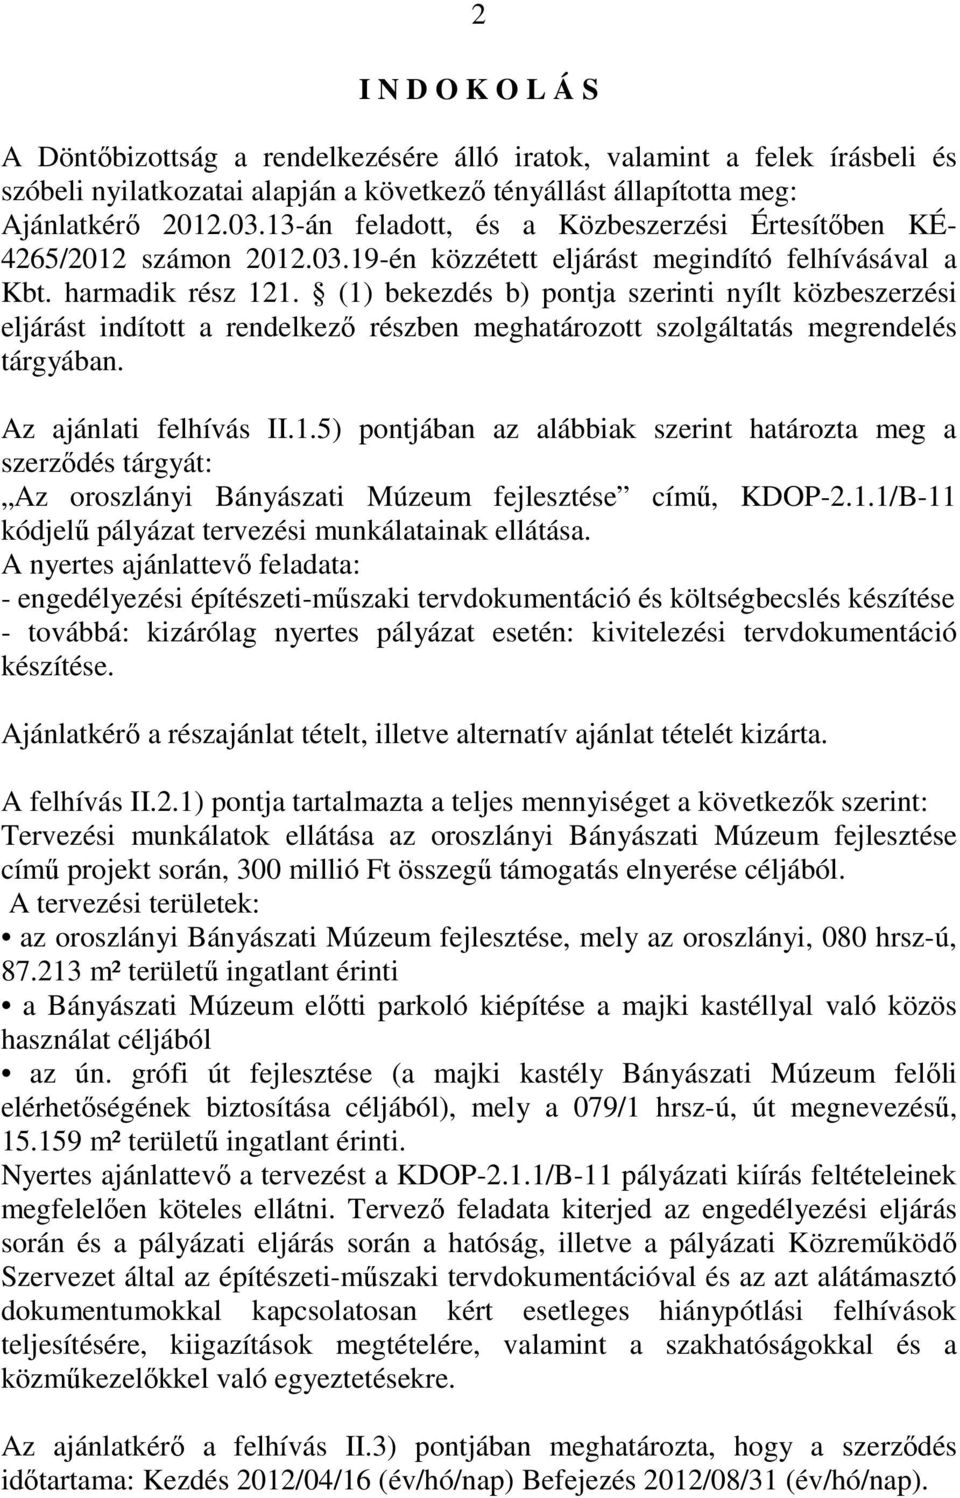 (1) bekezdés b) pontja szerinti nyílt közbeszerzési eljárást indított a rendelkezı részben meghatározott szolgáltatás megrendelés tárgyában. Az ajánlati felhívás II.1.5) pontjában az alábbiak szerint határozta meg a szerzıdés tárgyát: Az oroszlányi Bányászati Múzeum fejlesztése címő, KDOP-2.